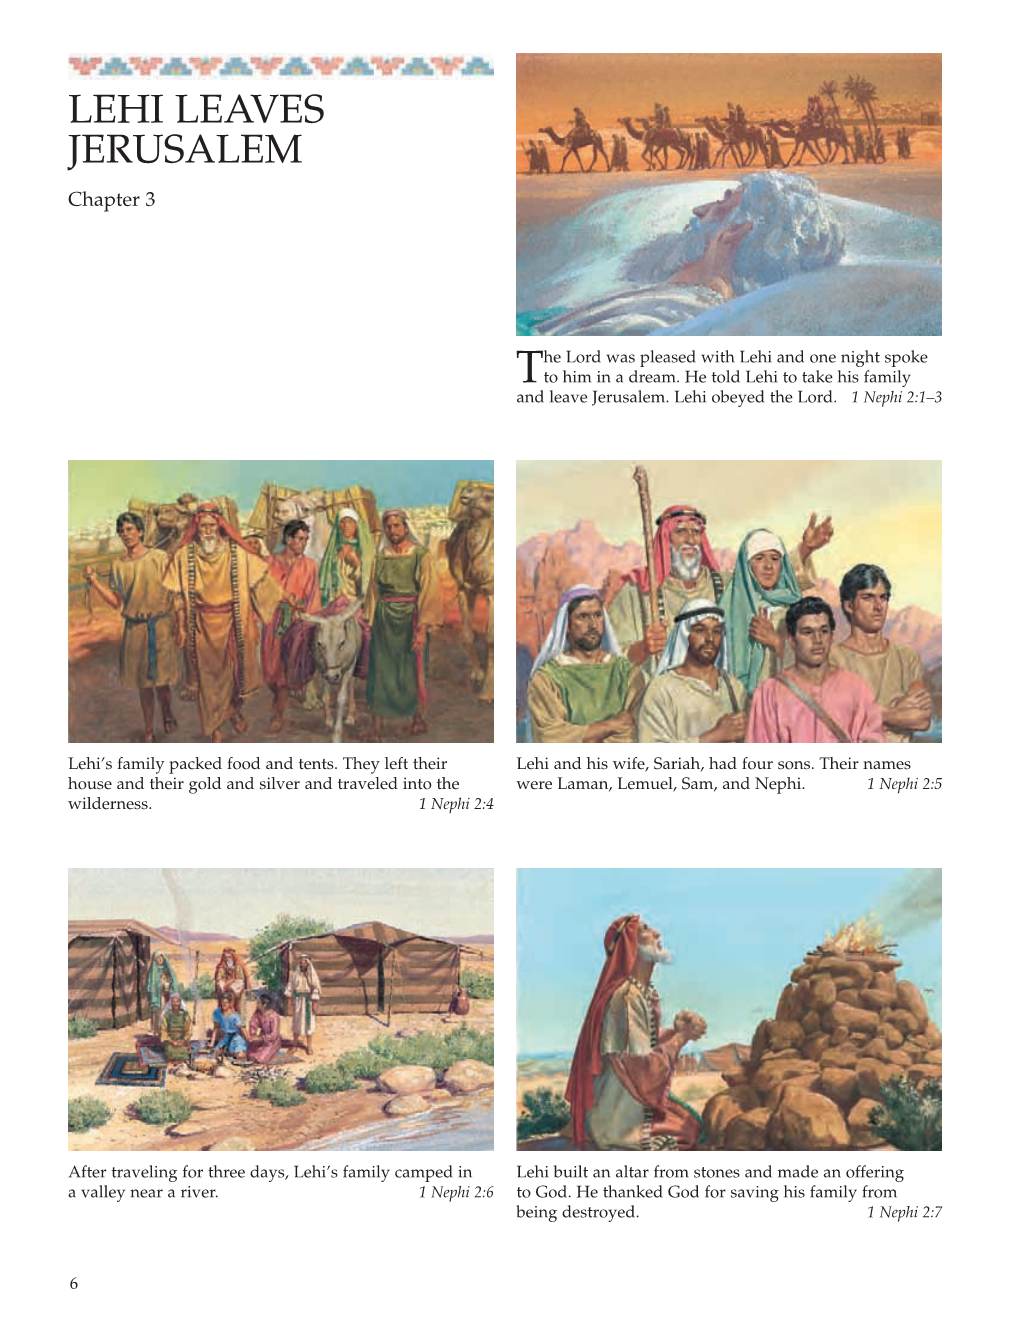 LEHI LEAVES JERUSALEM Chapter 3